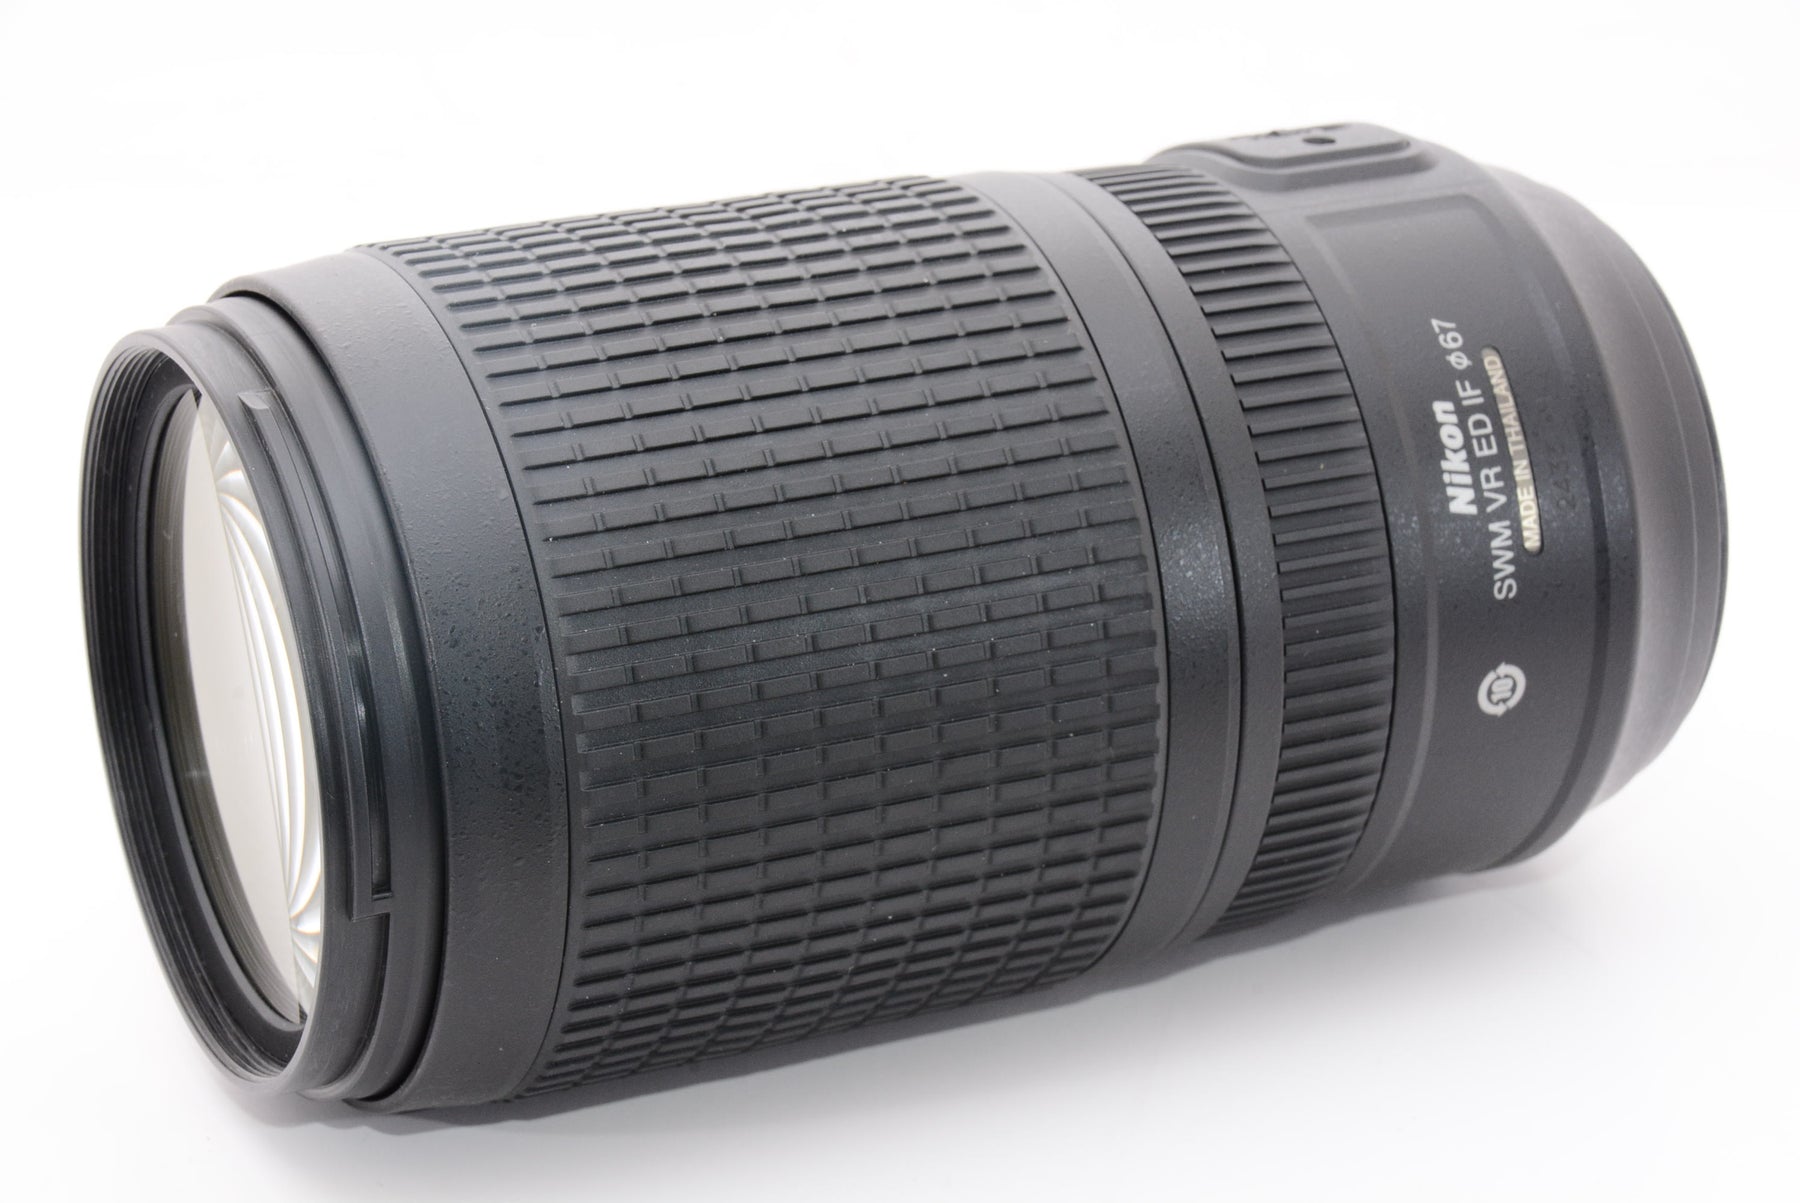 【外観特上級】Nikon 望遠ズームレンズ AF-S VR Zoom Nikkor 70-300mm f/4.5-5.6G IF-ED フルサイズ対応